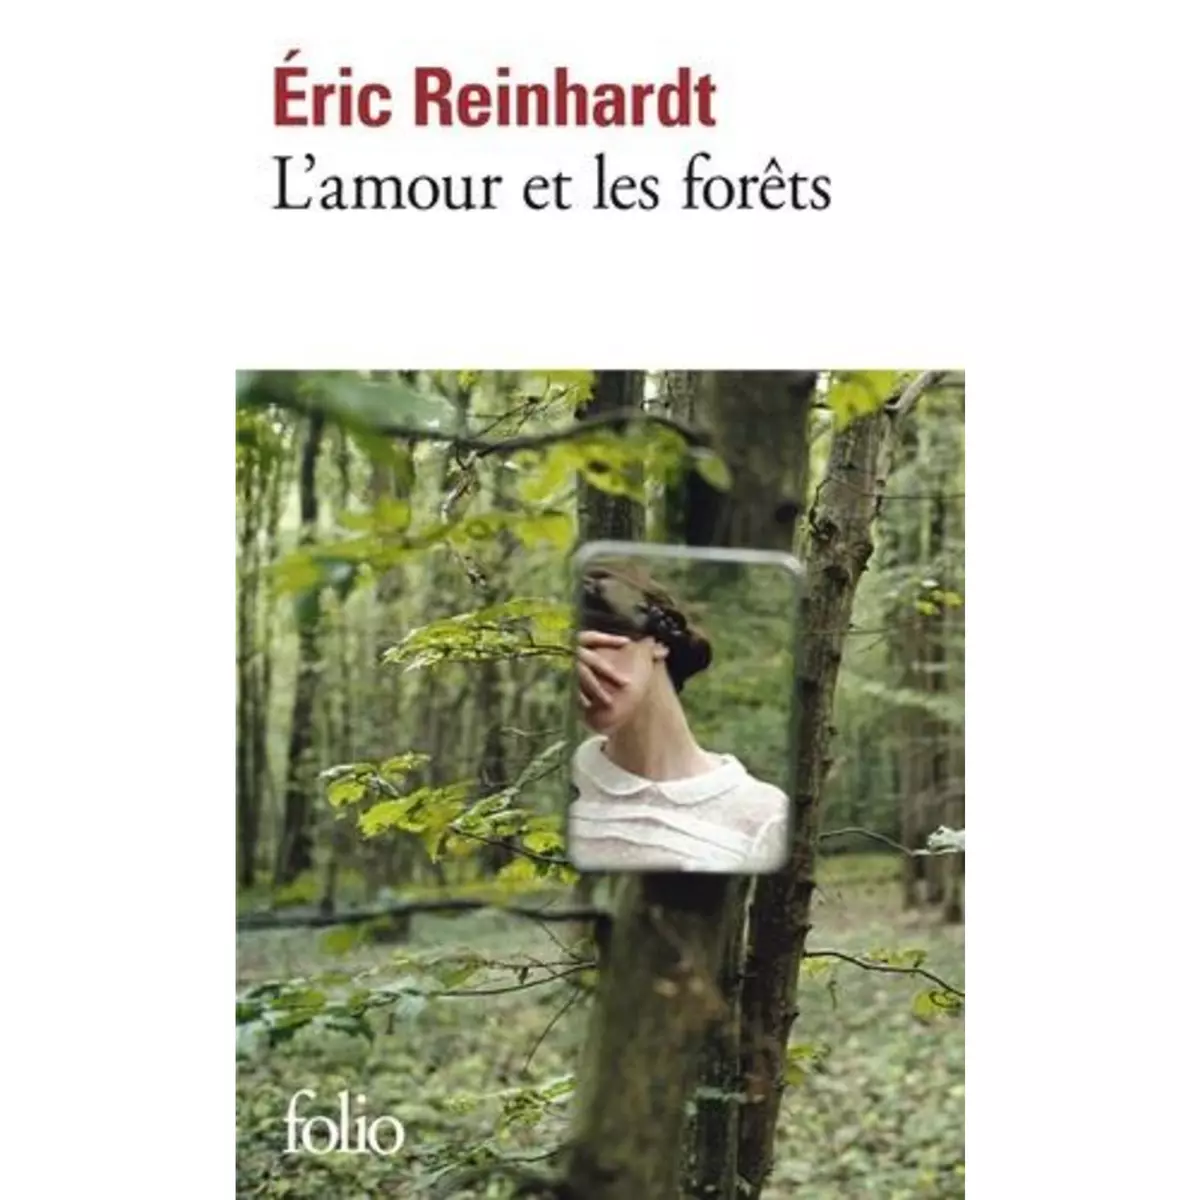  L'AMOUR ET LES FORETS, Reinhardt Eric